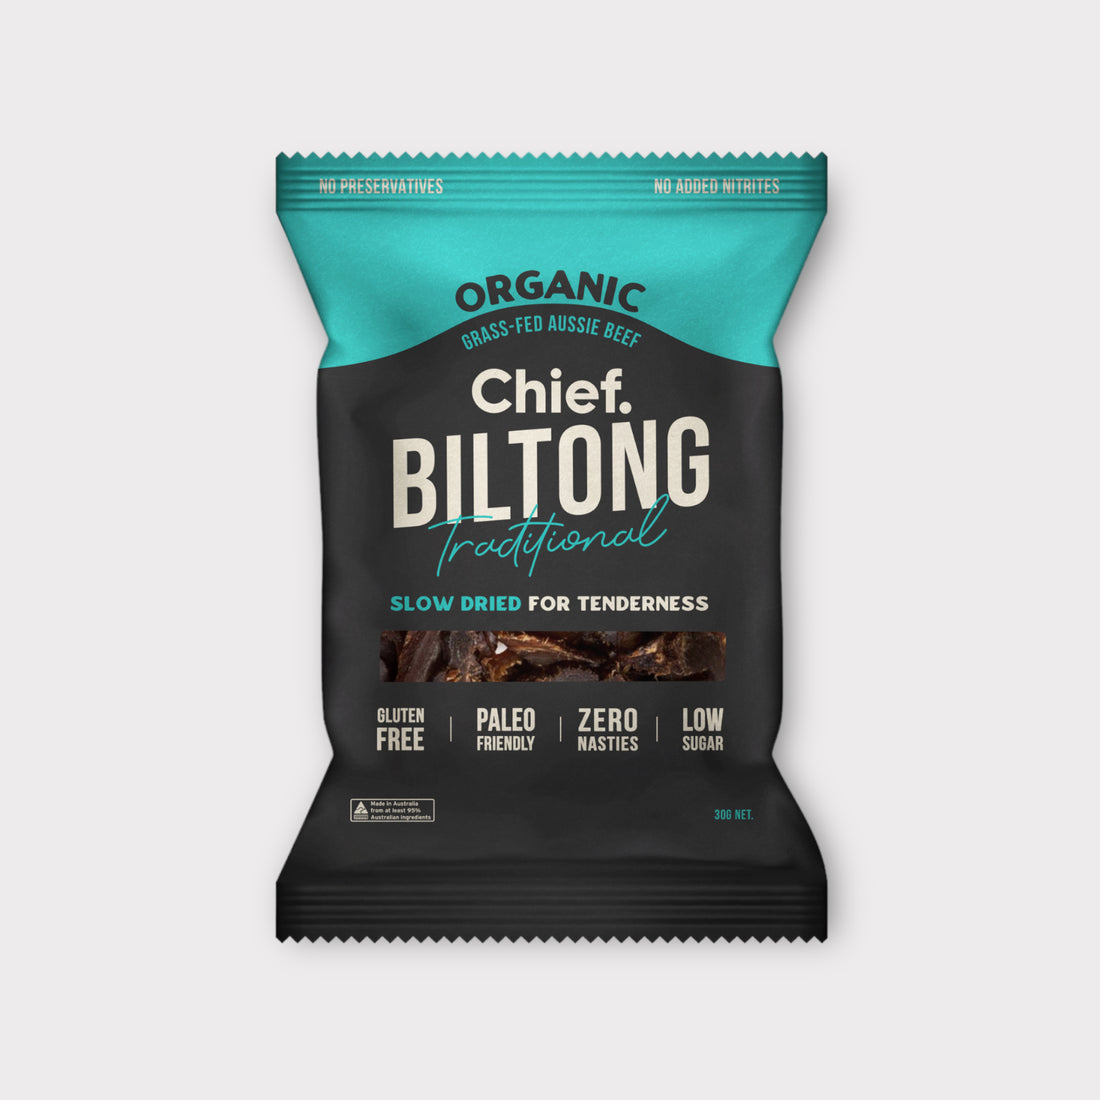 Chief Biltong - Traditional